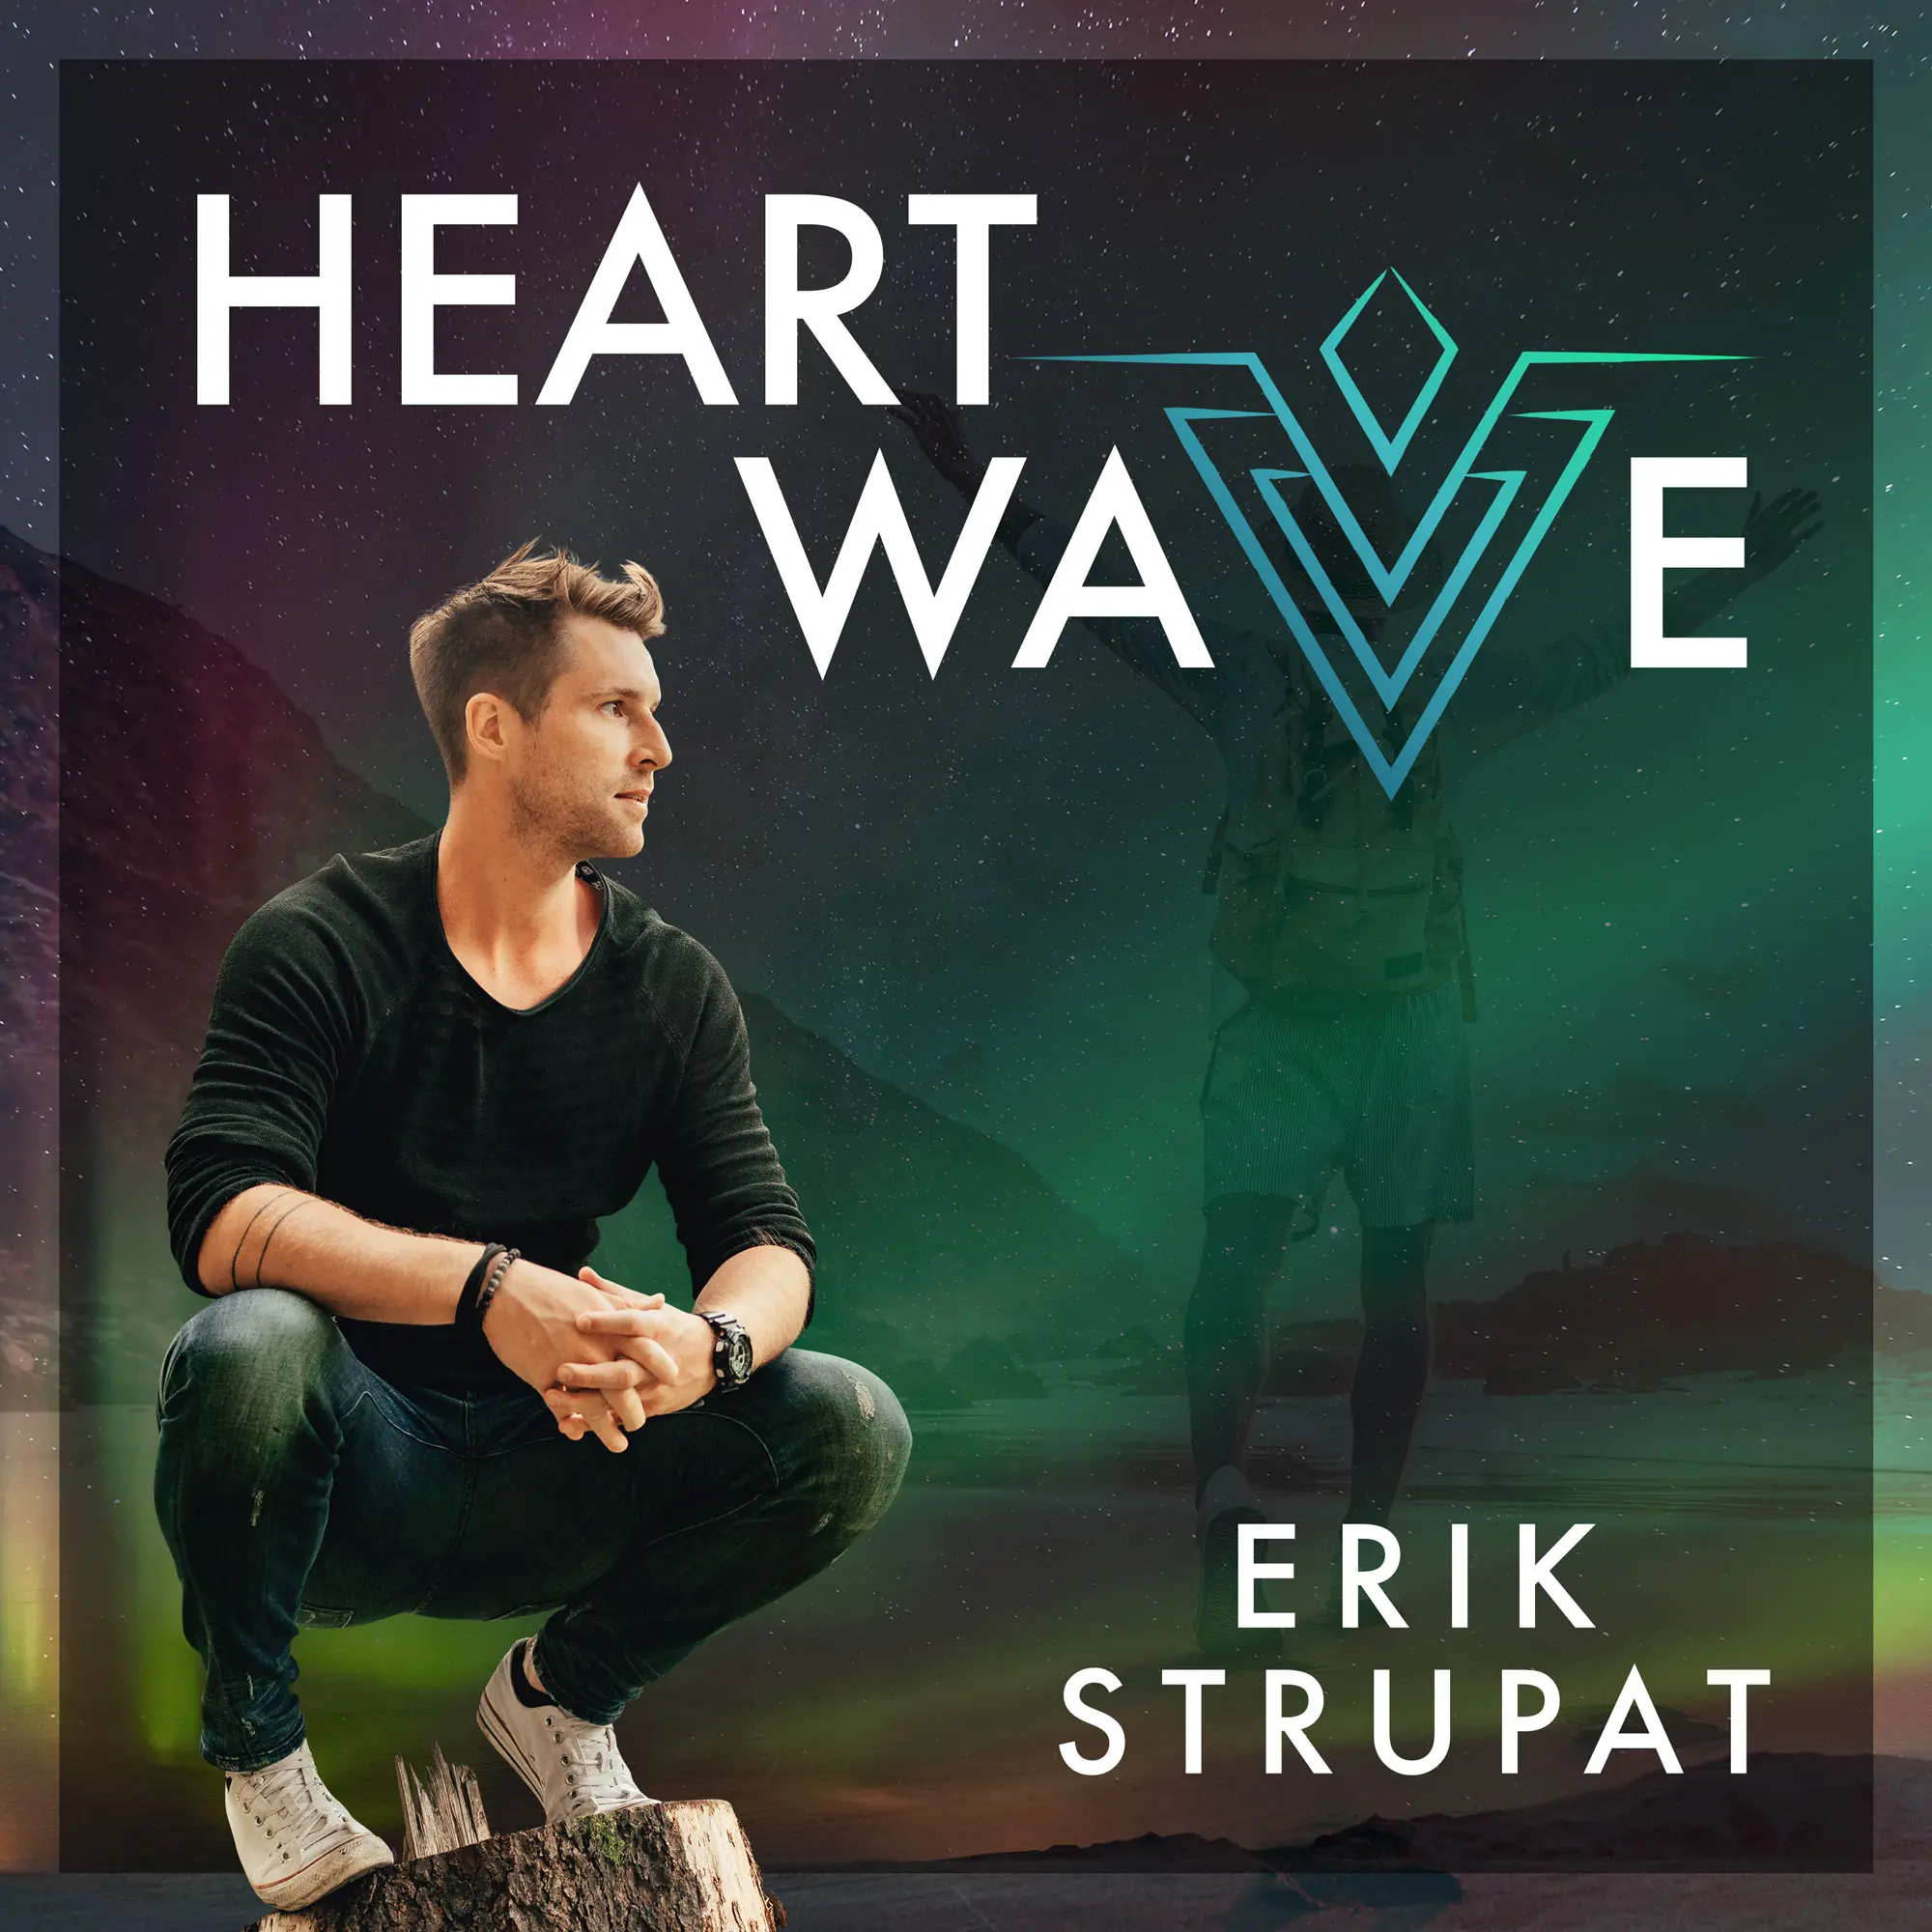 Erik Strupat